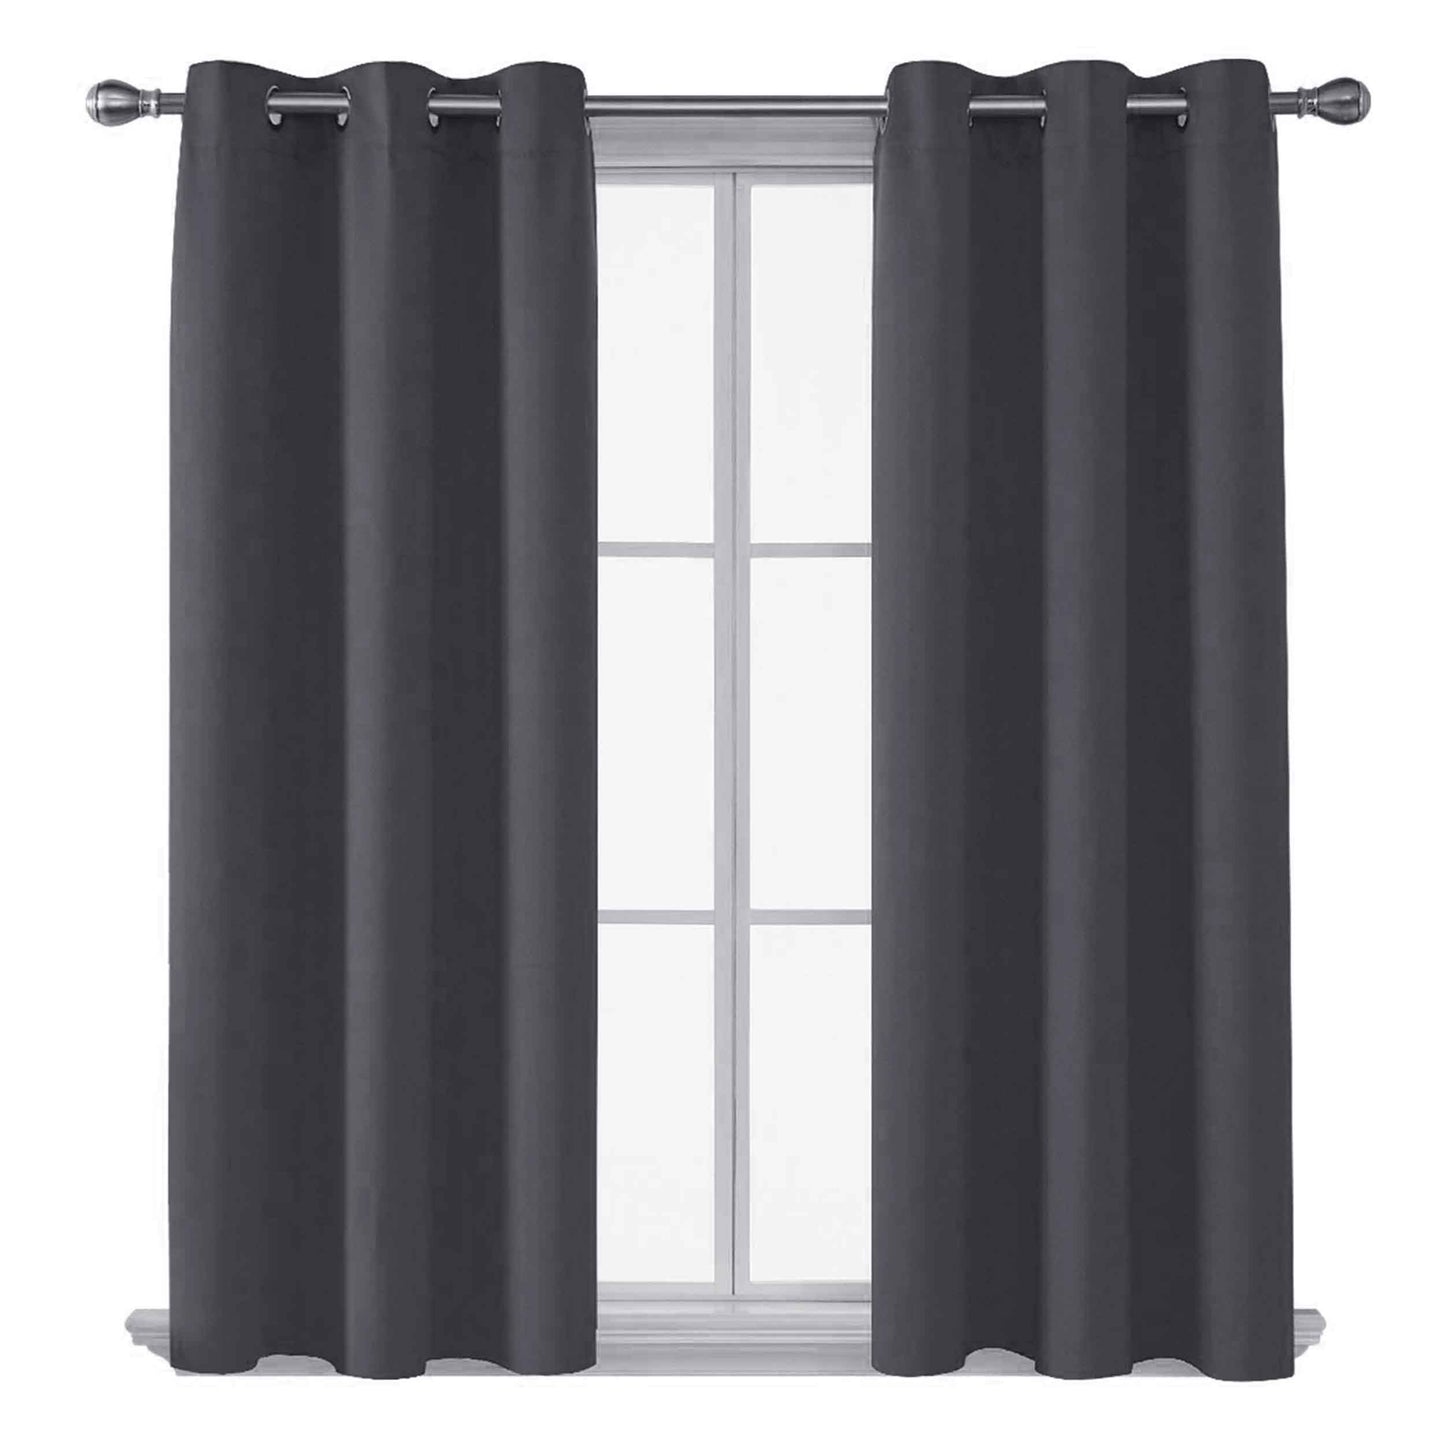 Blackout Curtains Homatz 